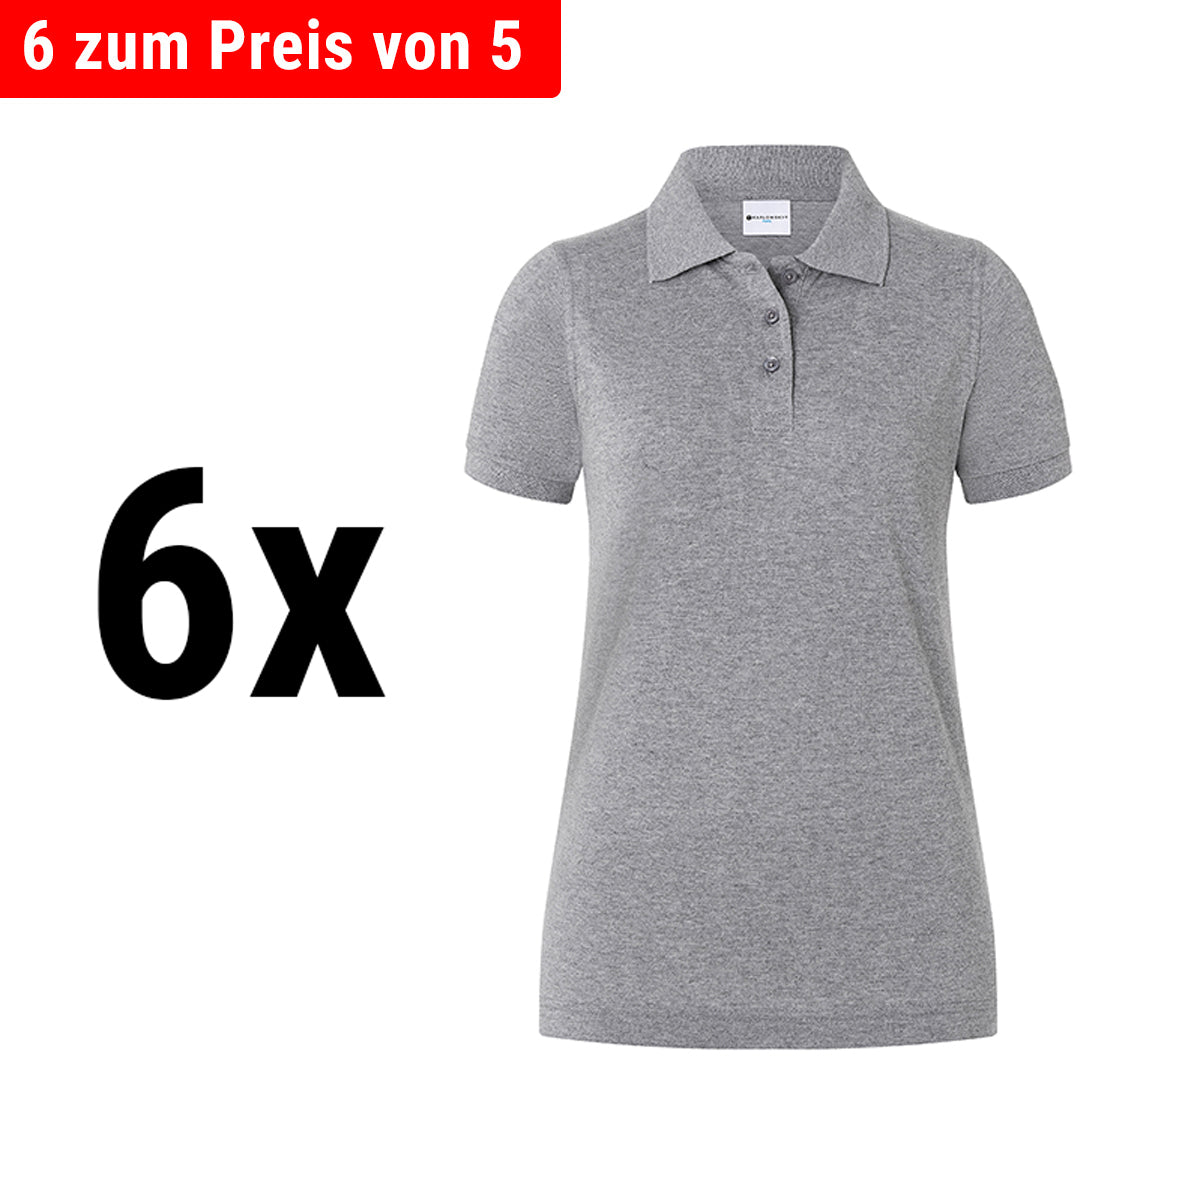 (6 stk) Karlowsky - Workwear Polo Shirt Basic til Damer - Lysegrå - Størrelse: 2XL